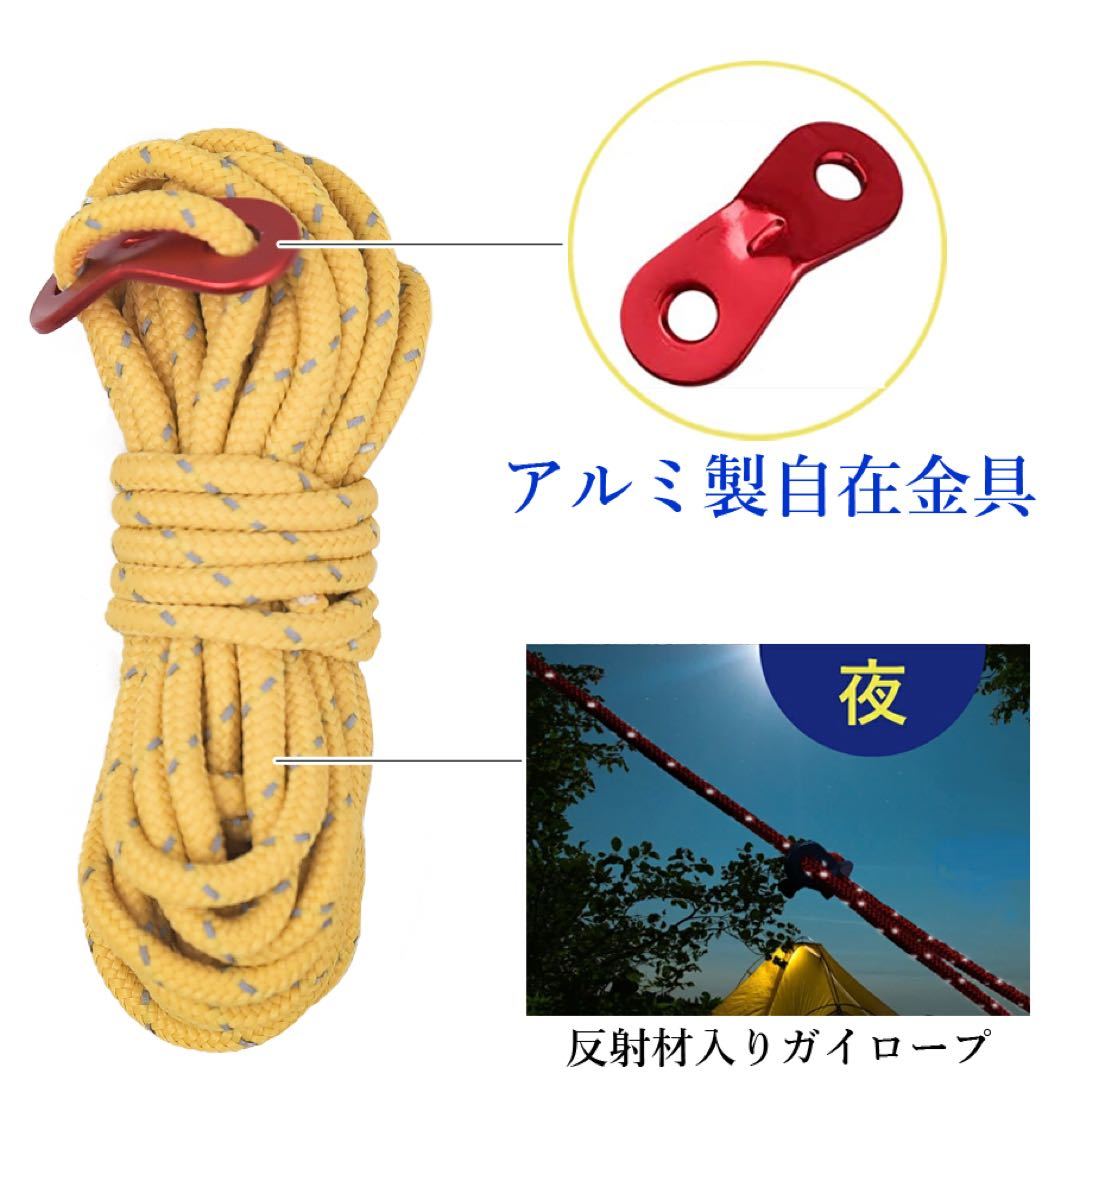 ロープ×6本、アルミ製自在金具×6  テント タープキャンプ 反射ロープ 黄色